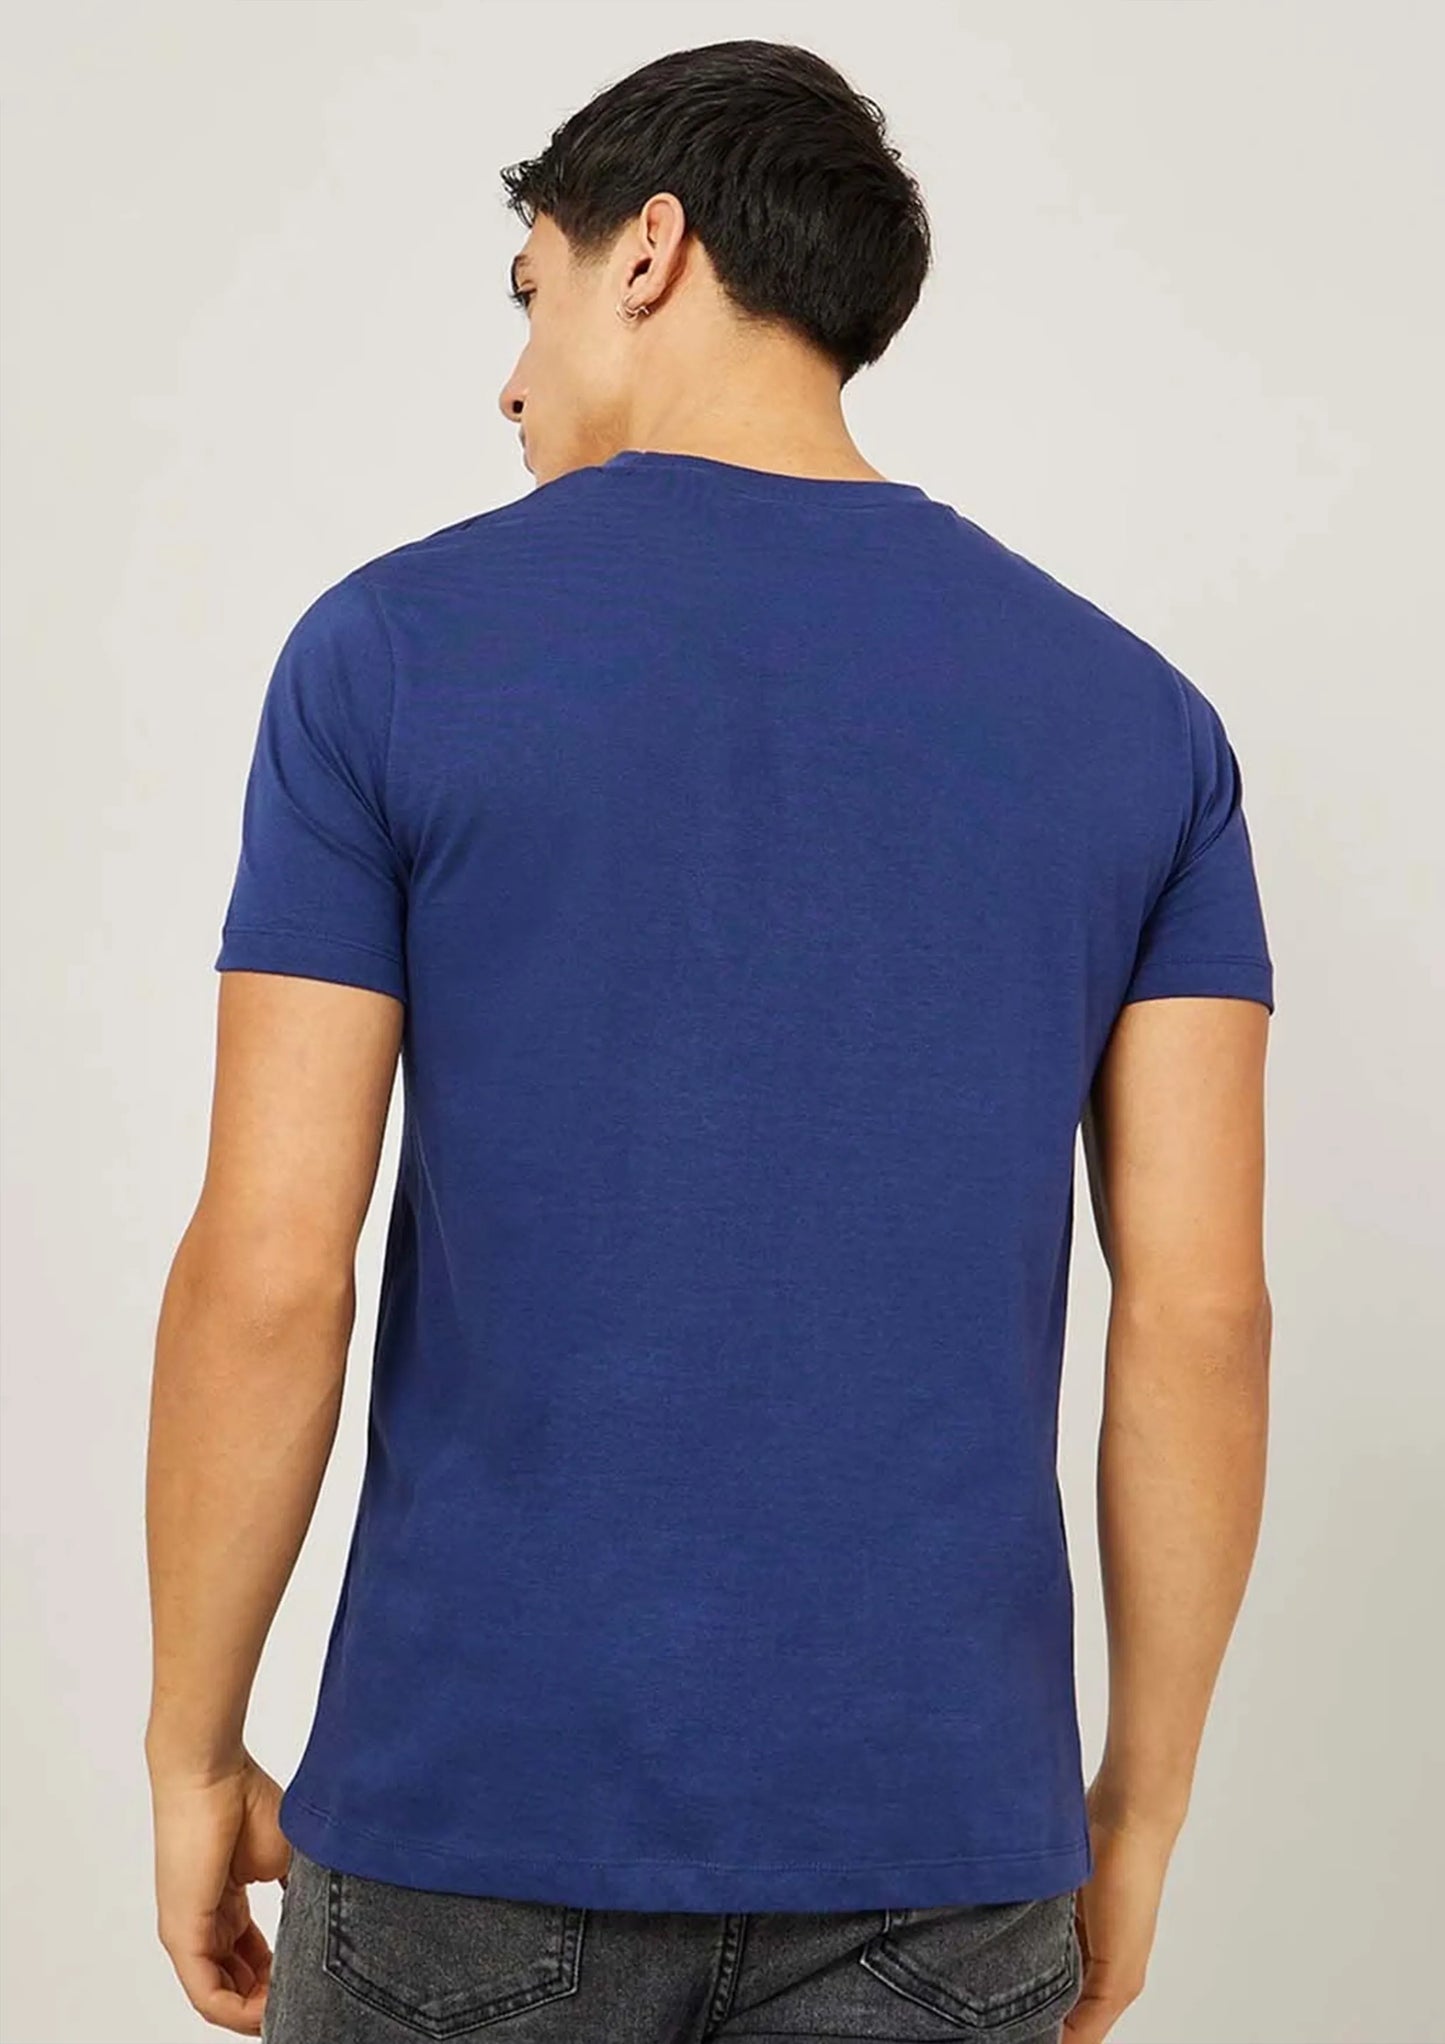 T-Shirt Plain Blue Color Half Sleeve Round Neck Men's roscoe Cotton